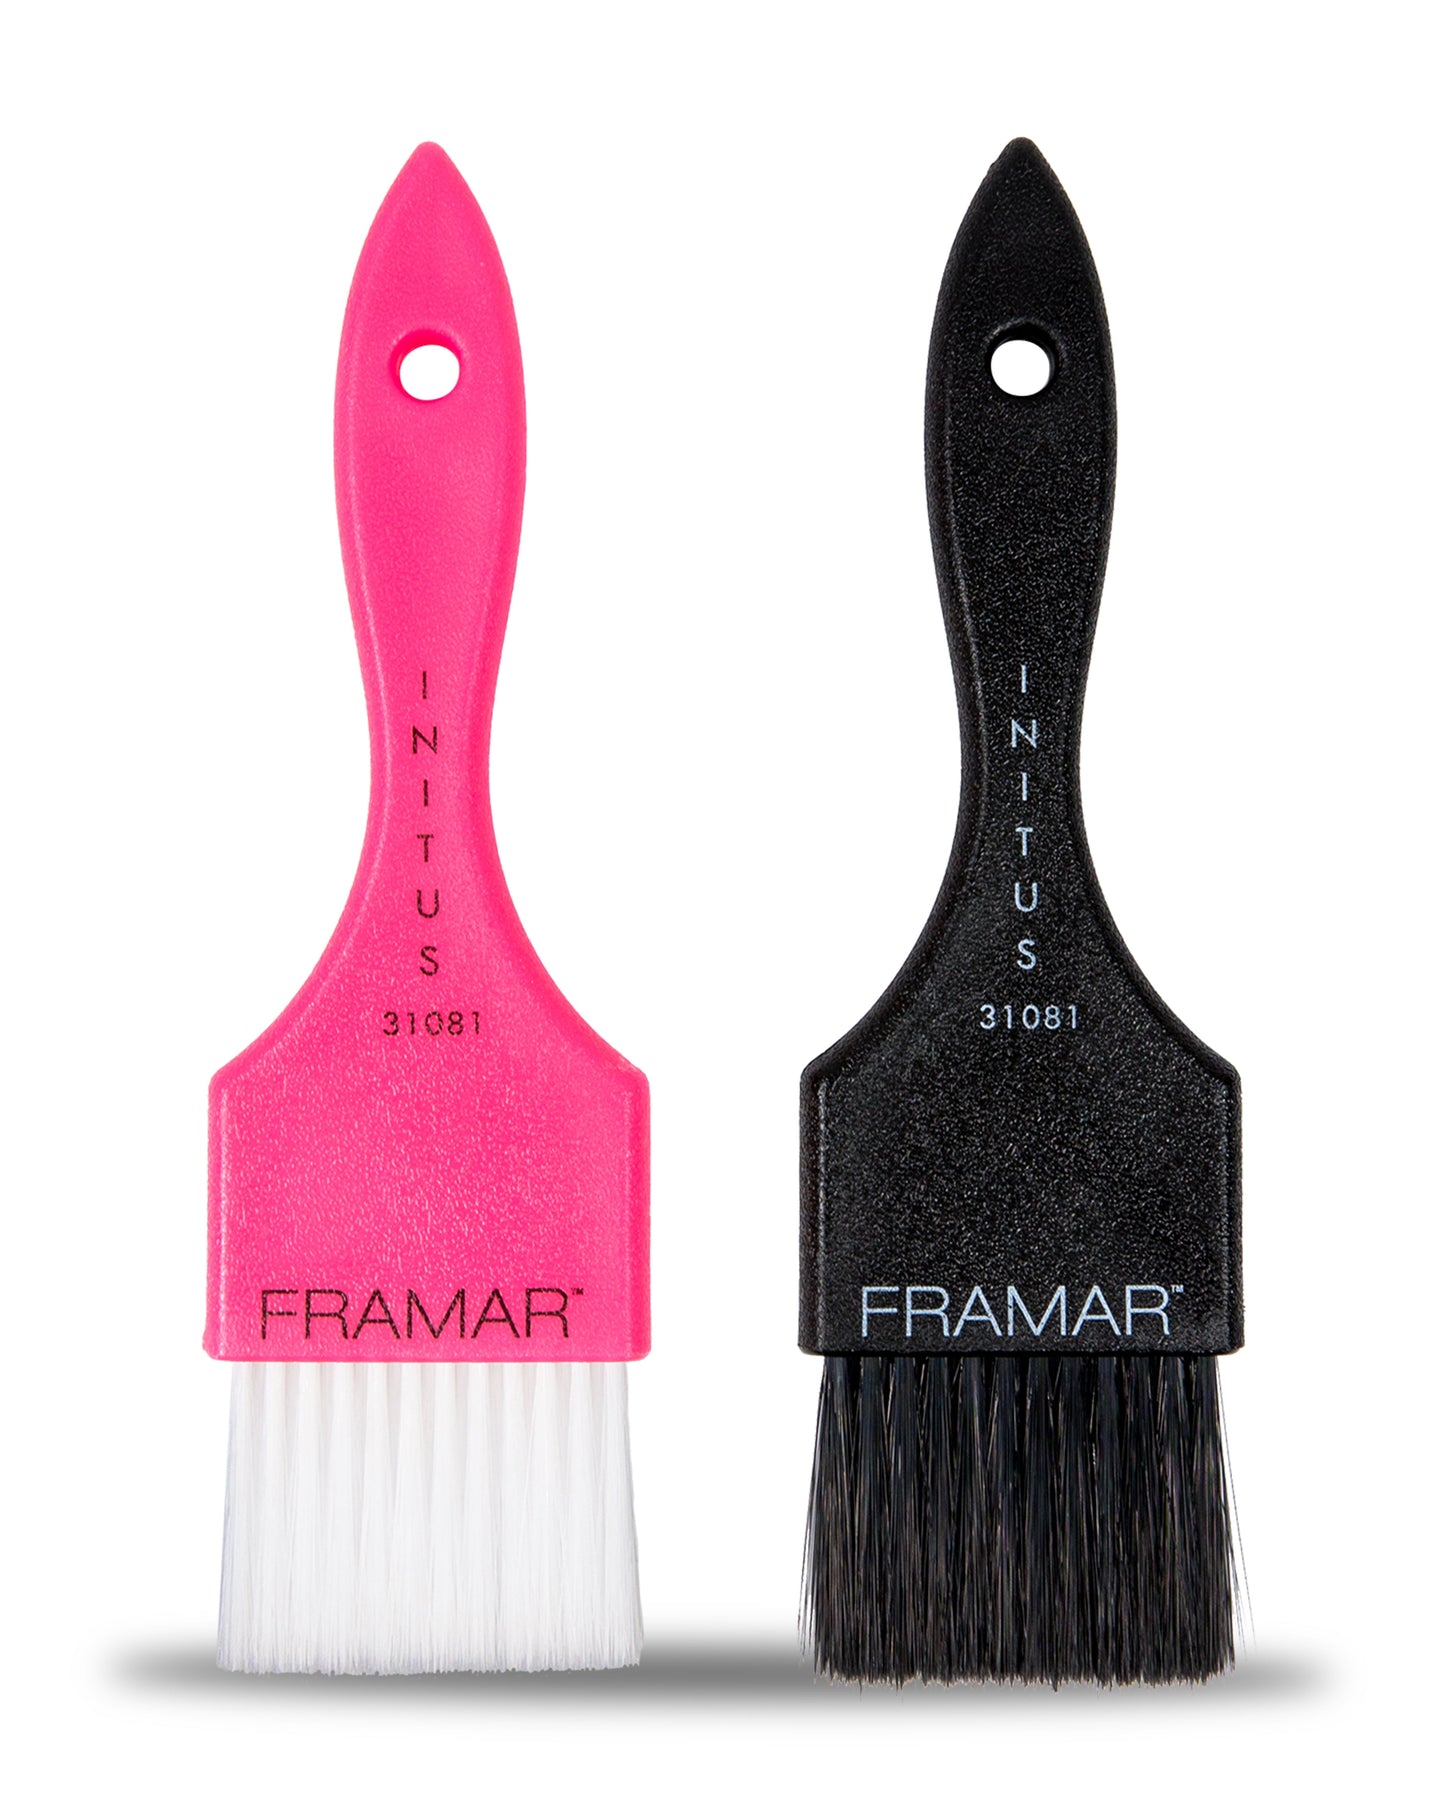 Framer Power Painter Brush Set (Pink & Black)